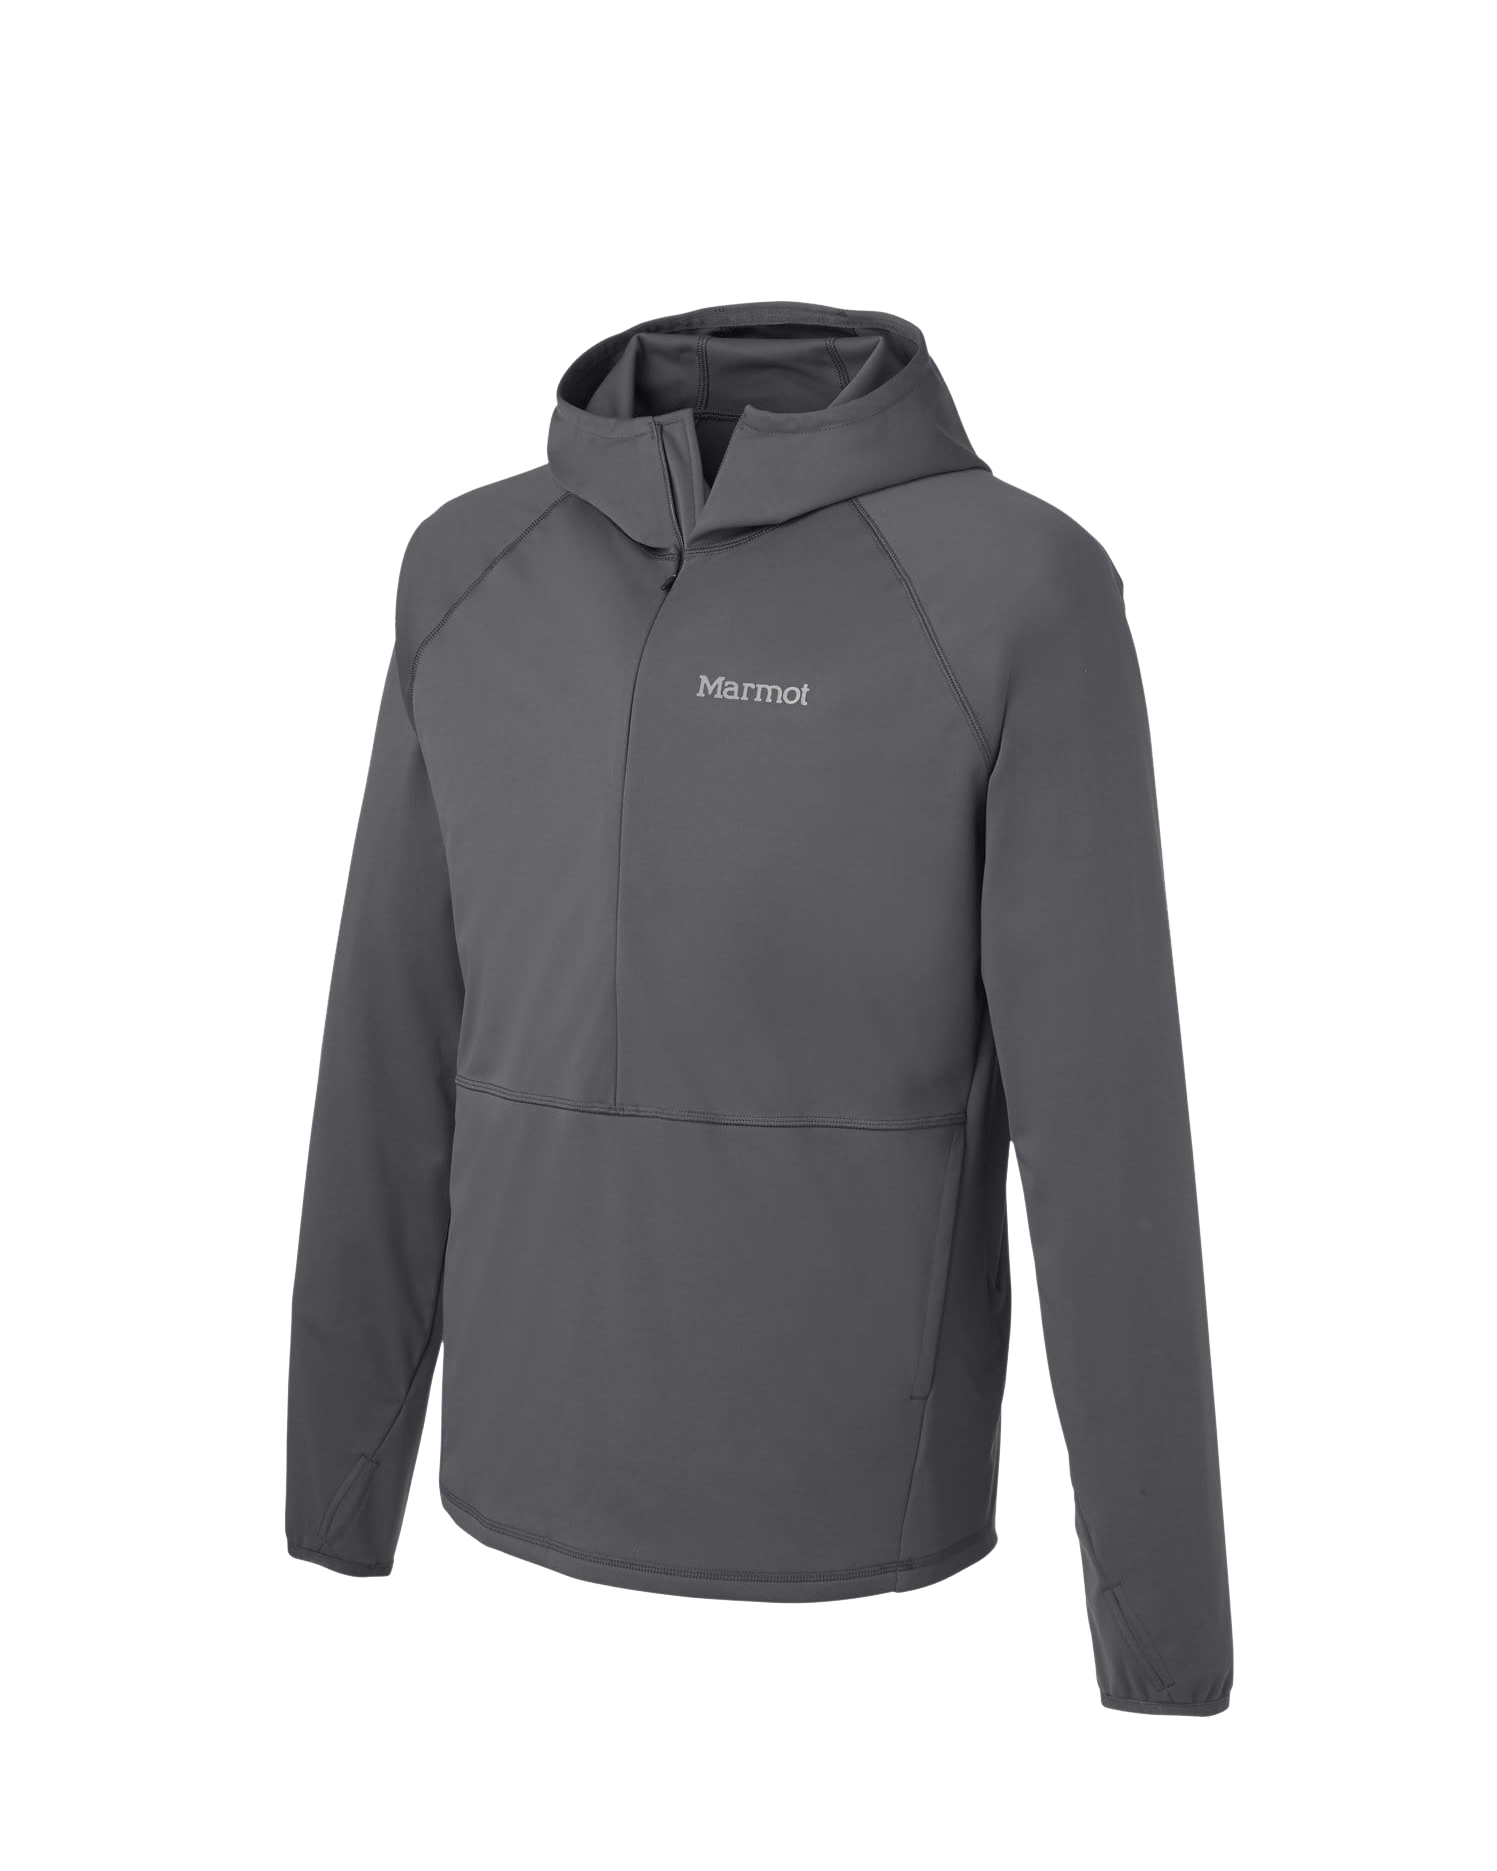 SM / Slate Grey Custom Marmot Men's Zenyatta Half-Zip Jacket